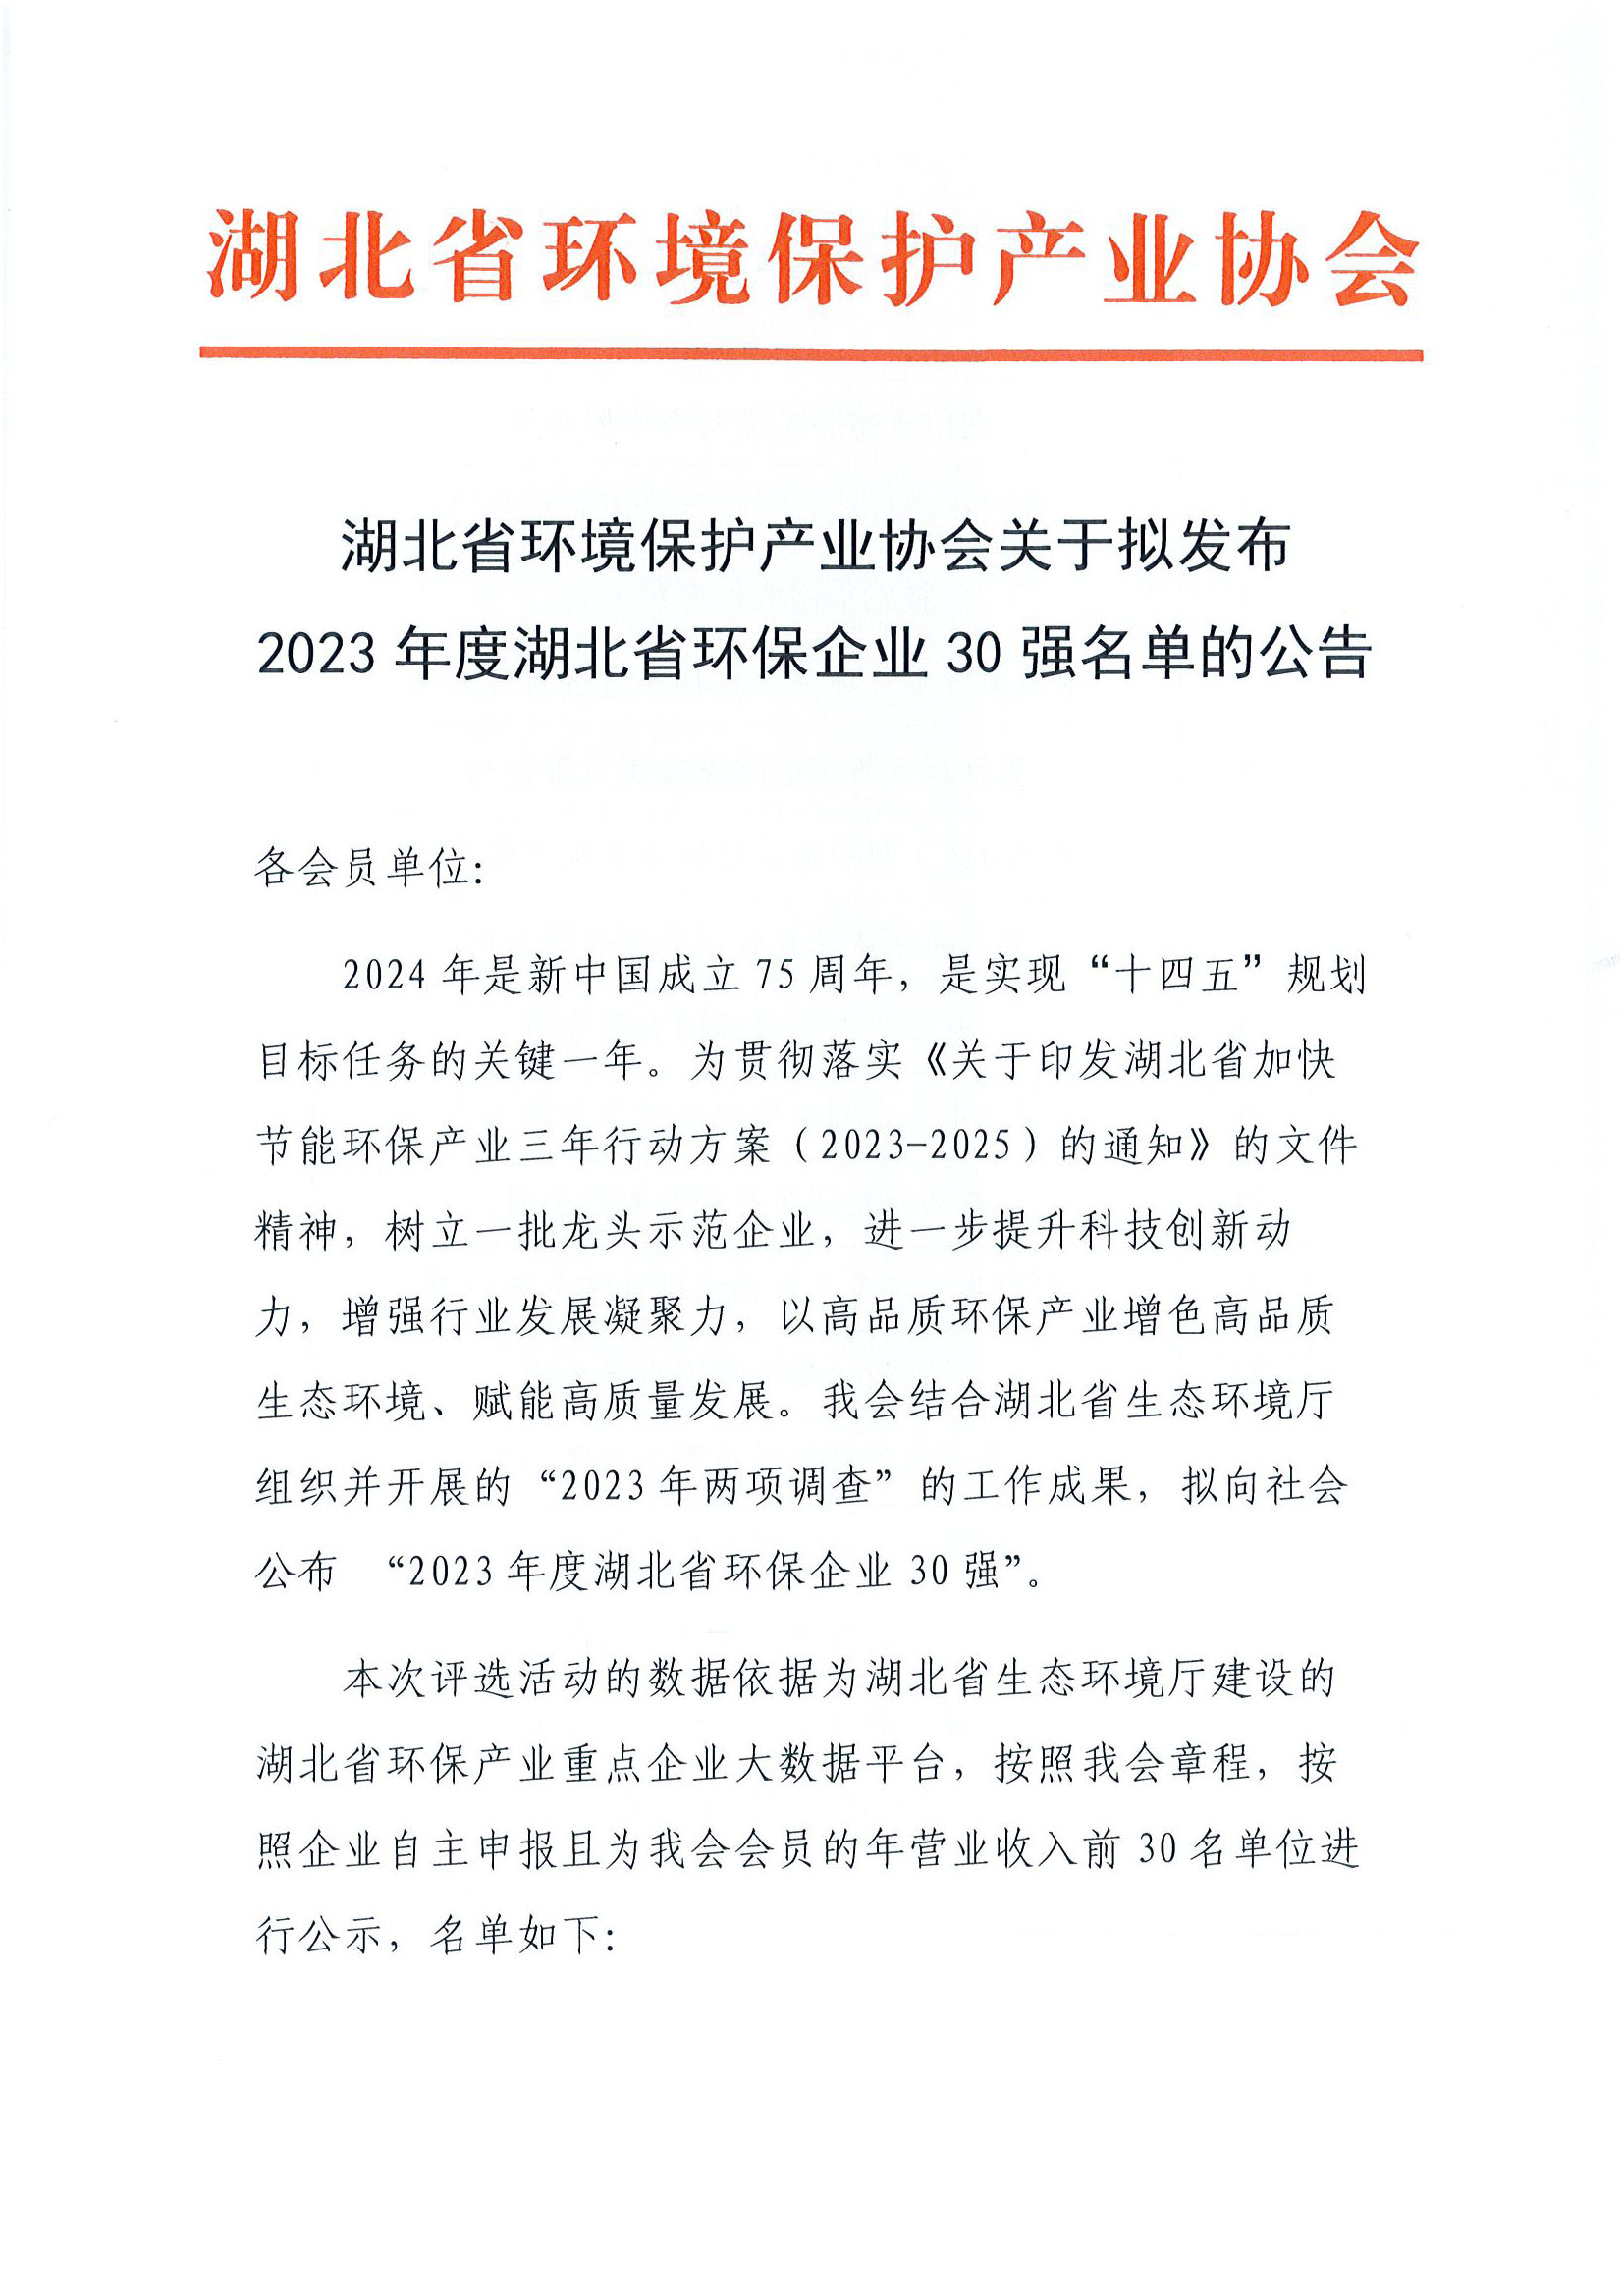 湖北省环境保护产业协会关于拟发布2023年度湖北省环保企业30强名单的公告